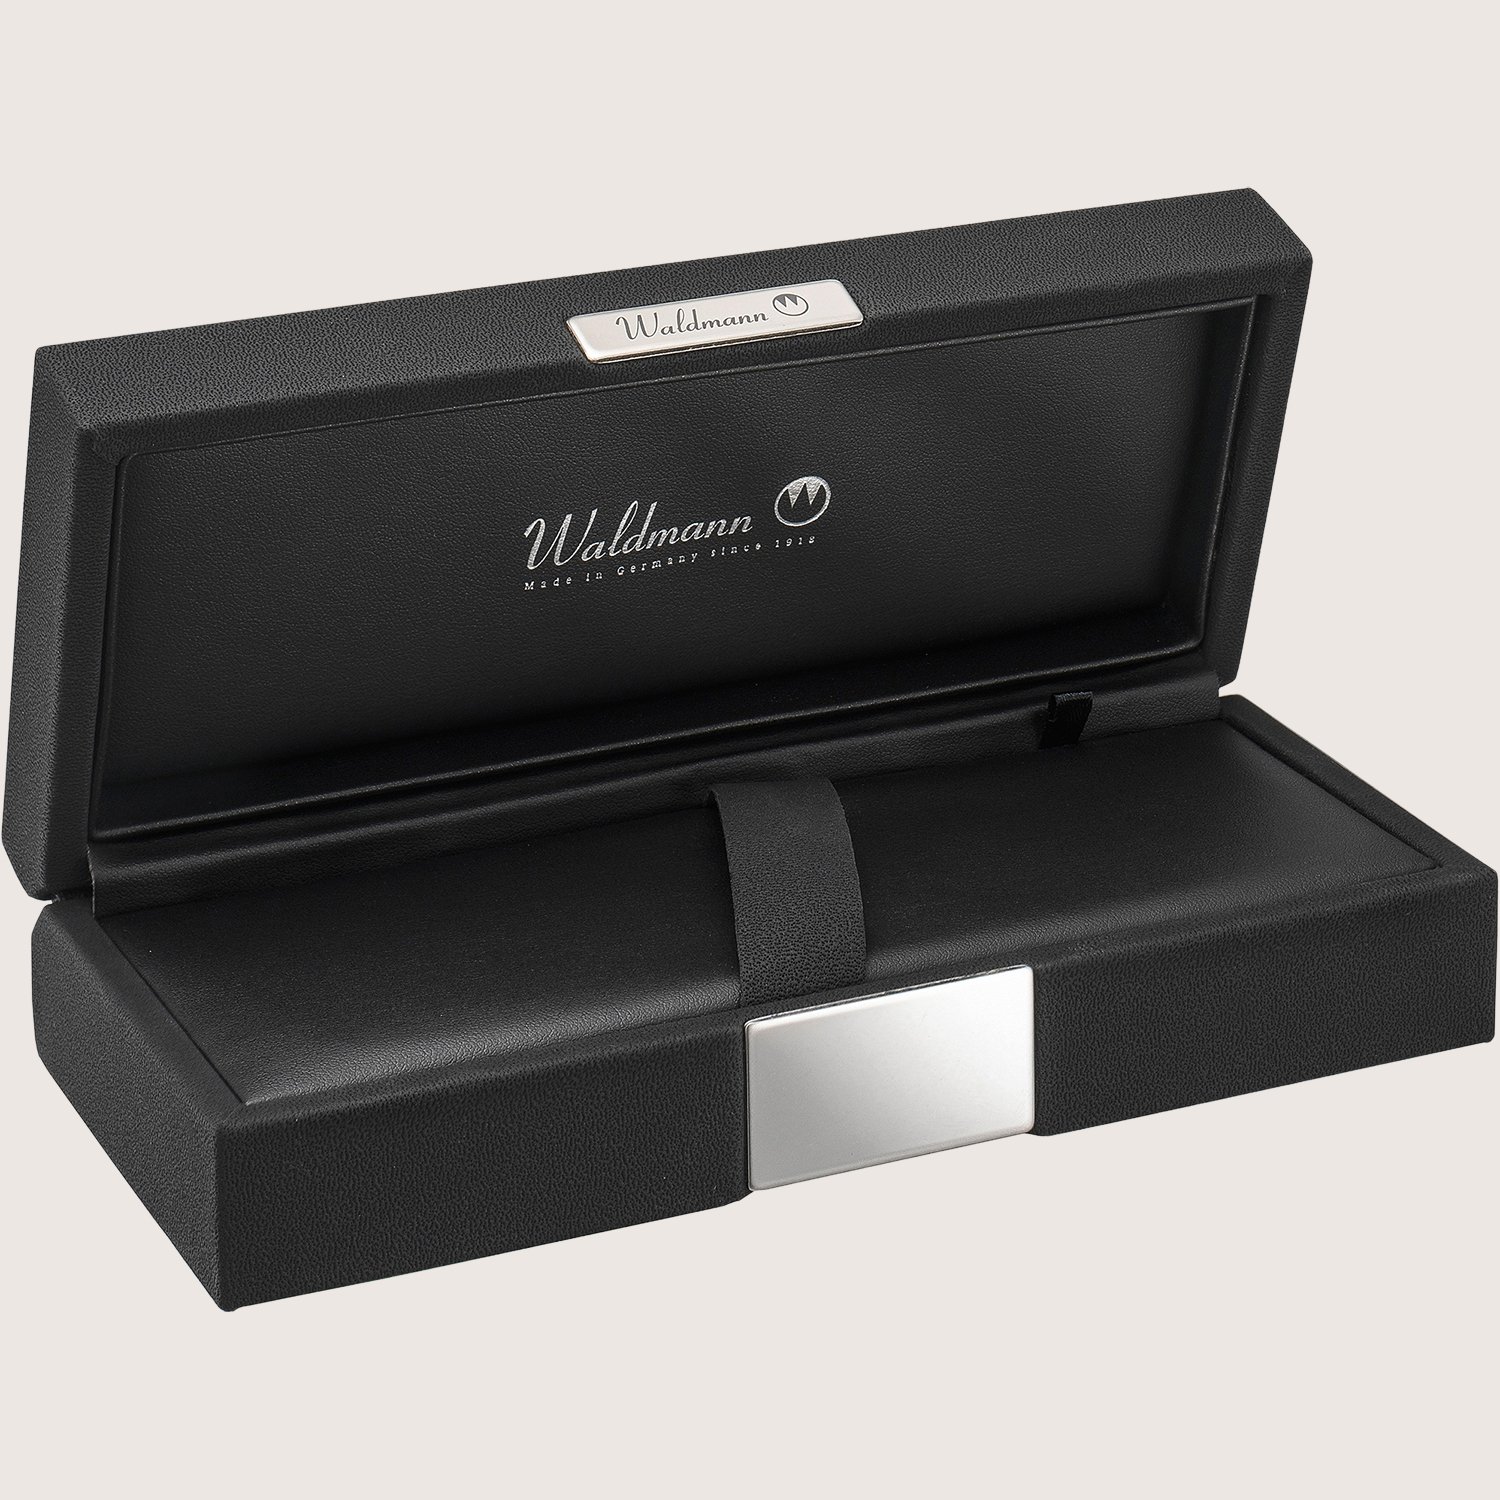 PRECIEUX Füllfederhalter mit Goldfeder F Lack schwarz Silber hochglanzpoliert mit Linien-Dekor